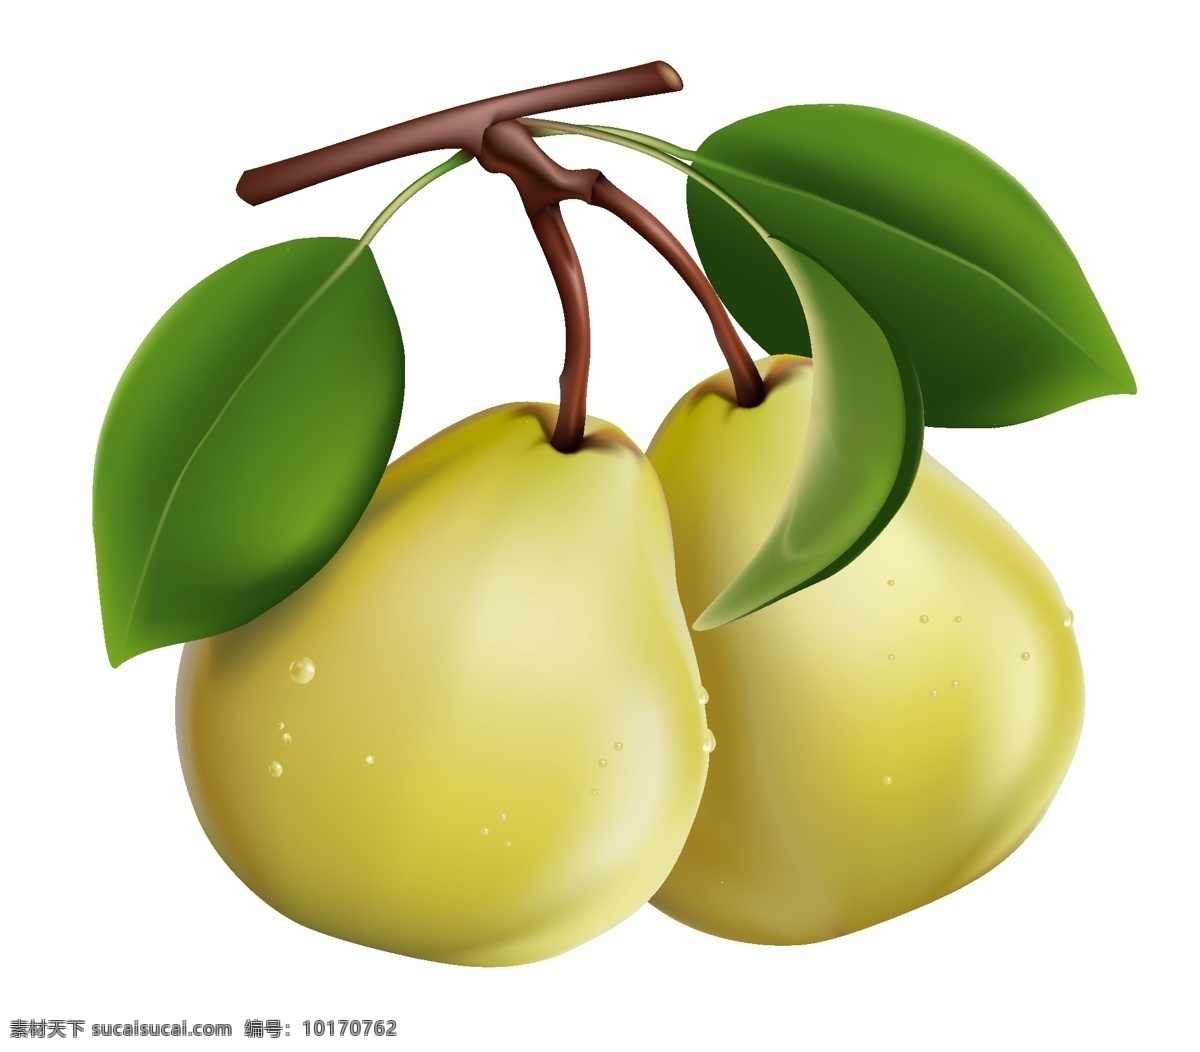 矢量梨素材 梨 梨素材 矢量梨 水果 水果设计 矢量水果 新鲜水果 矢量素材 蔬菜水果 生物世界 白色